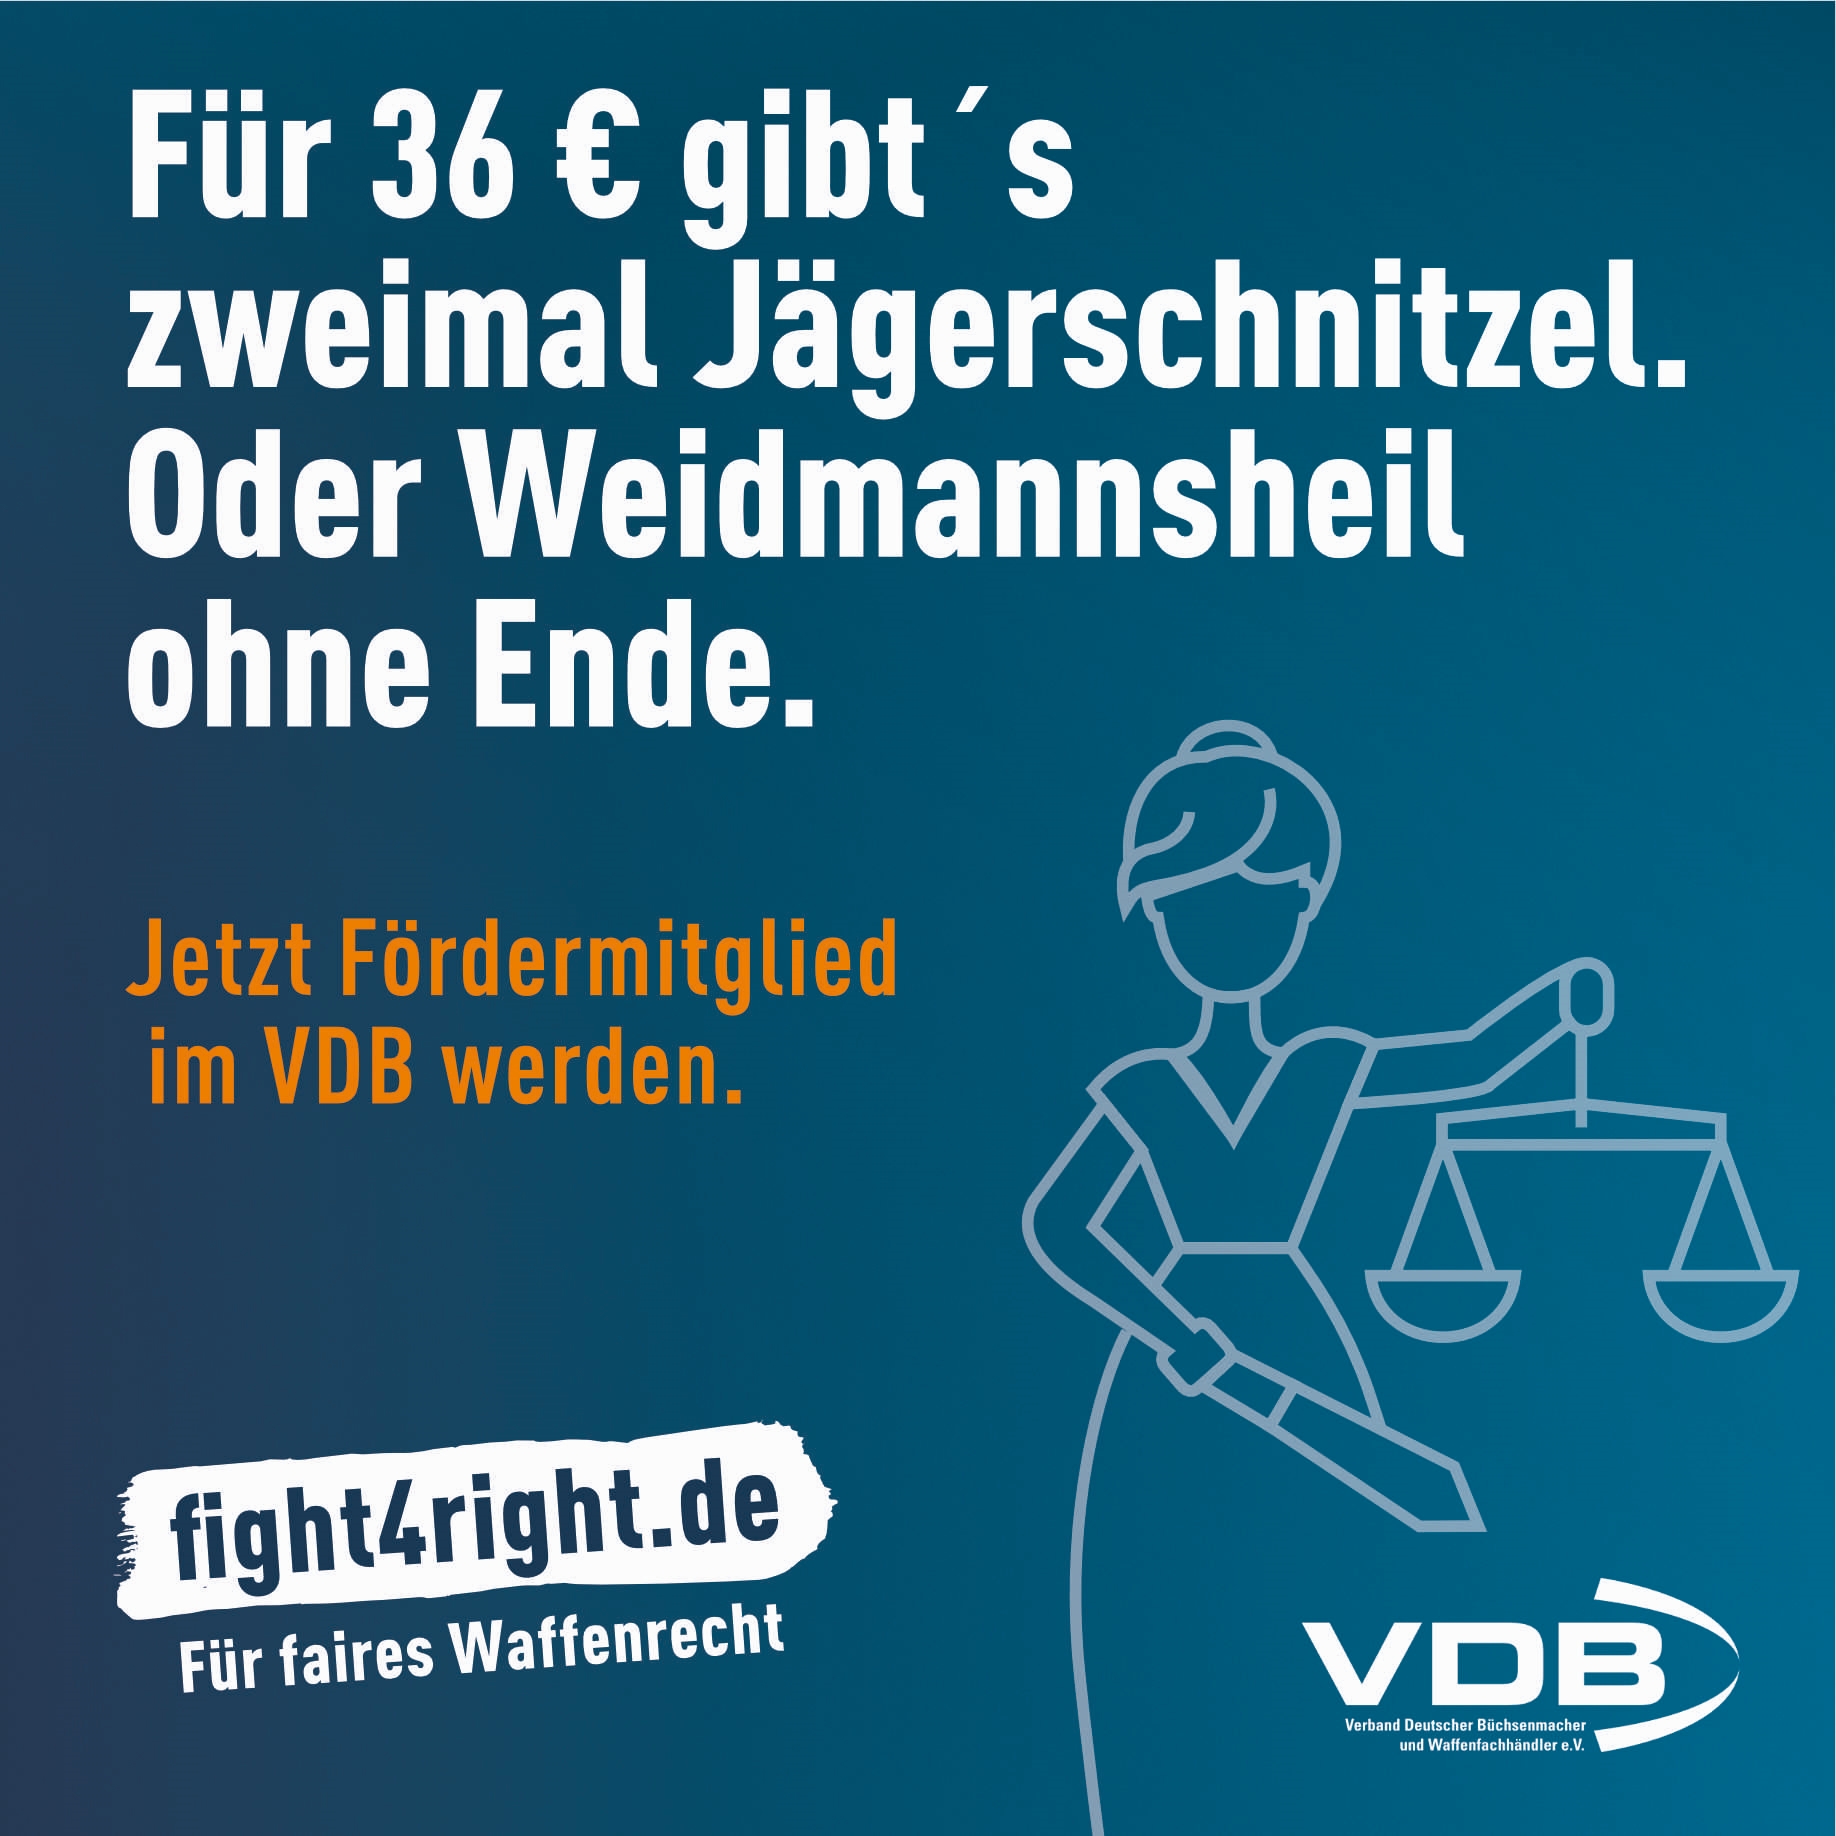 fight4right - vdb für faires Waffenrecht